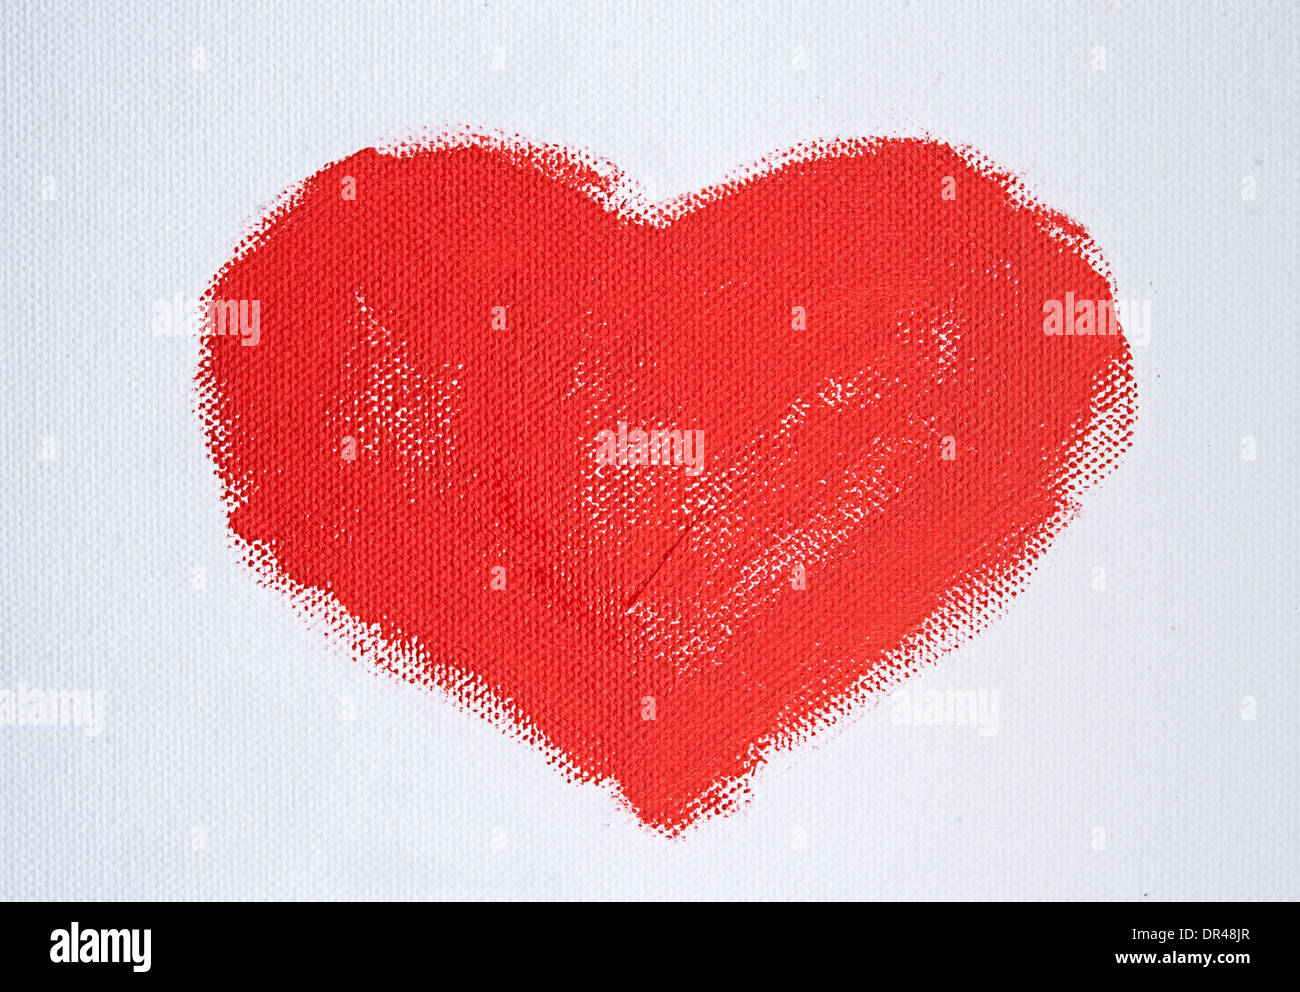 Coeur rouge peint avec peinture acrylique sur toile blanche Banque D'Images